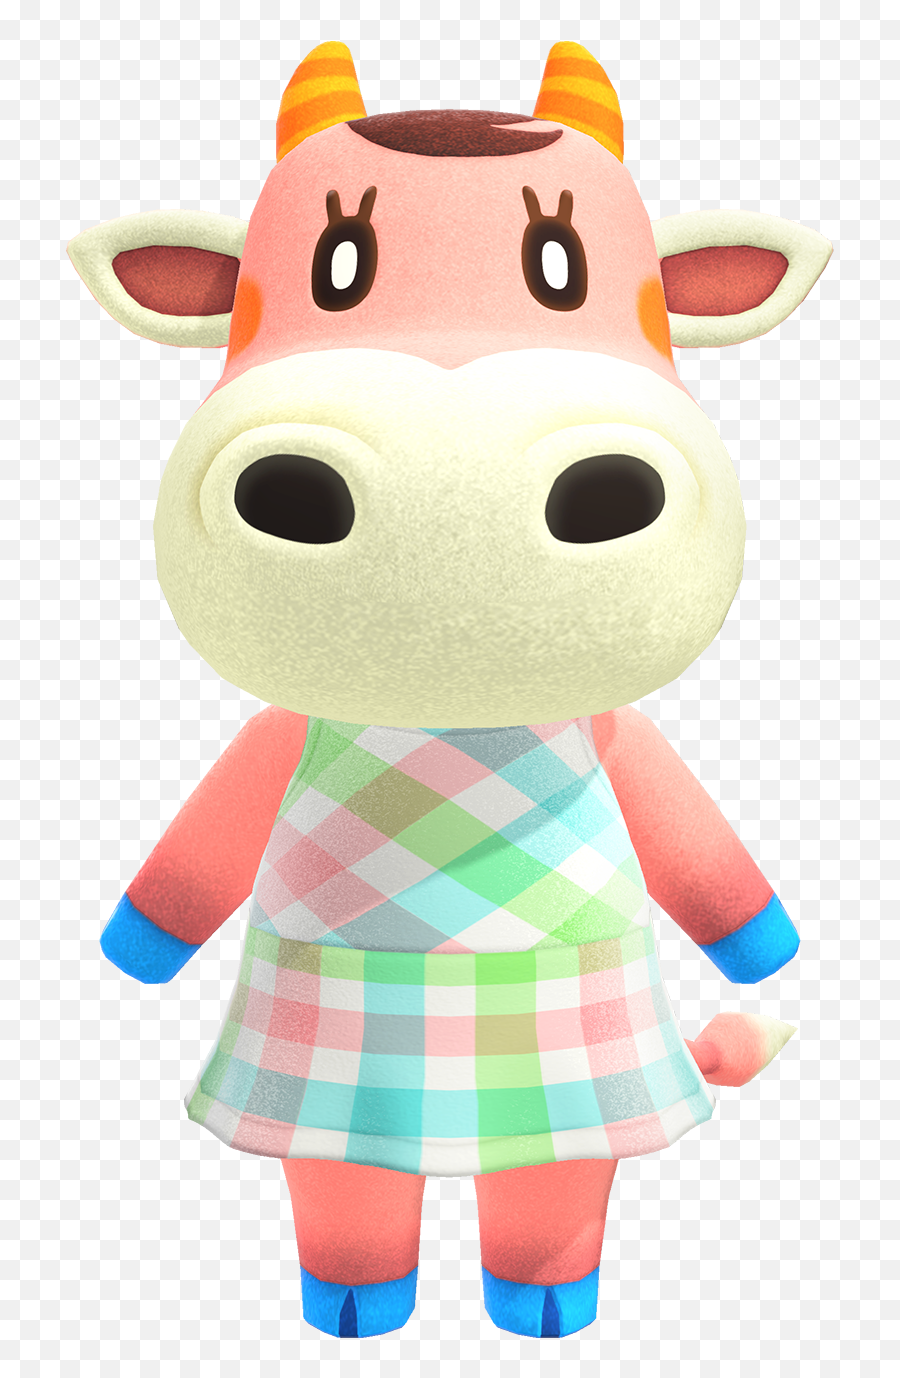 Norma - Norma Animal Crossing Emoji,Cow Showing Emotion